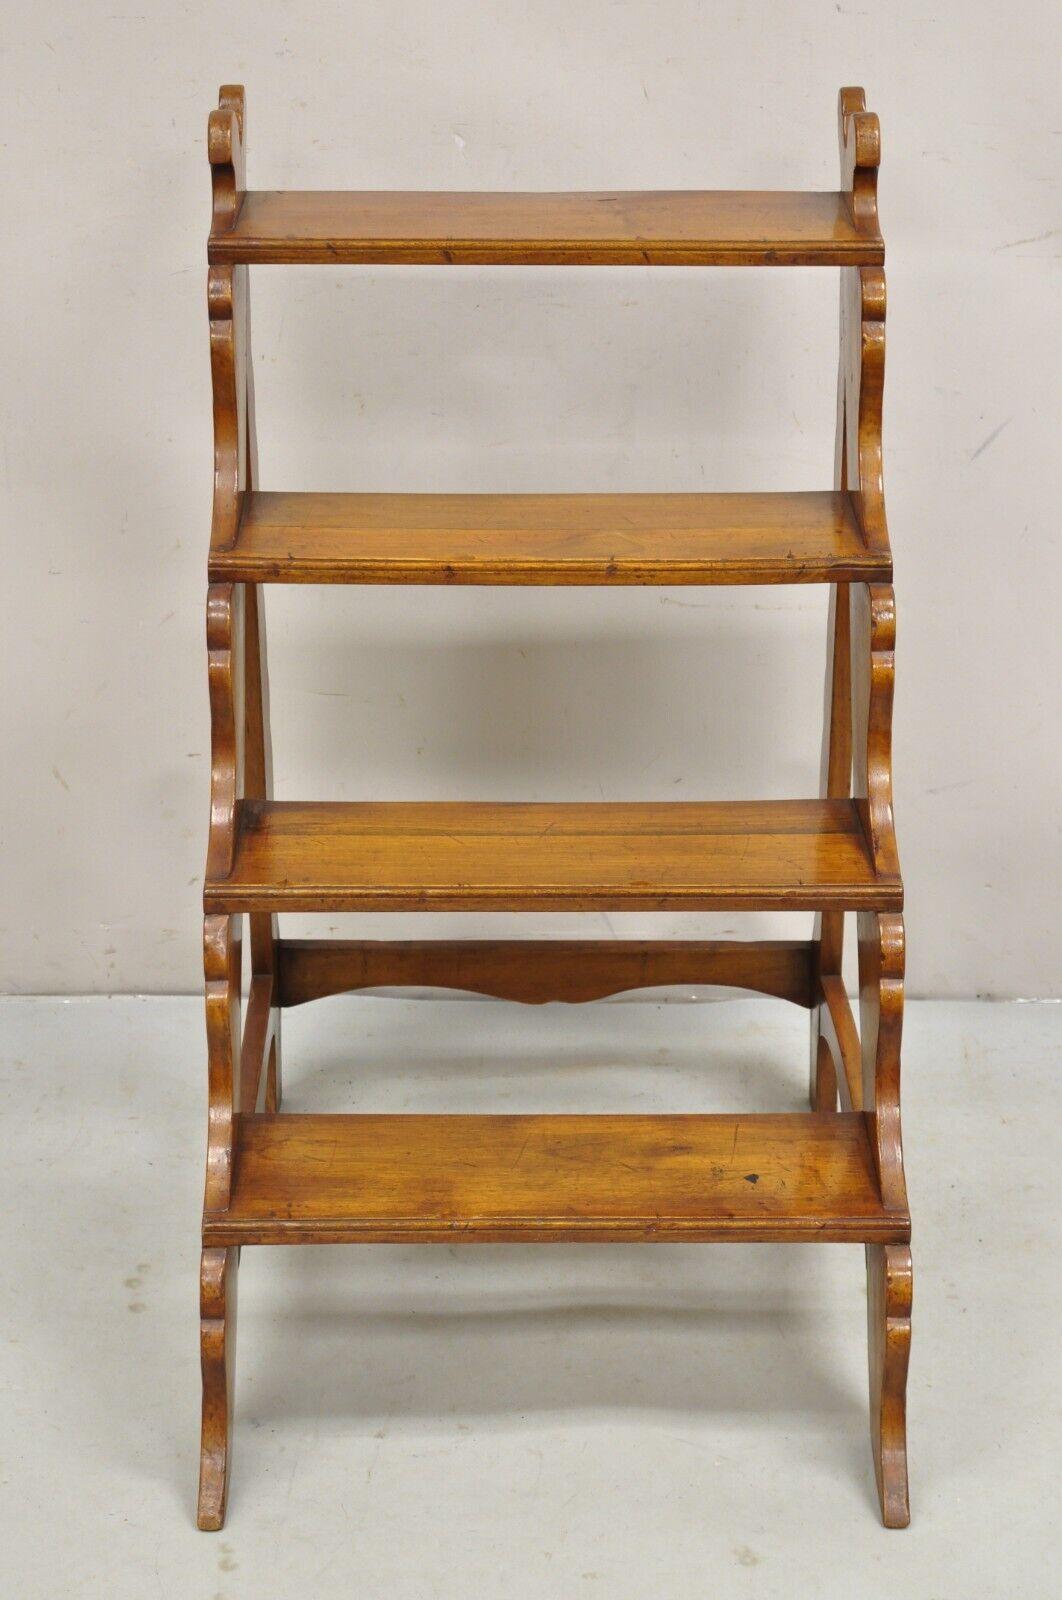 Vintage Italian Provincial Style Carved Olivewood Library Step Ladder Side Table. Der Artikel ist aus Massivholz gefertigt, hat eine gealterte/antiquierte Oberfläche, schön geschnitzte Details und ist auf der Unterseite mit dem Stempel Made in